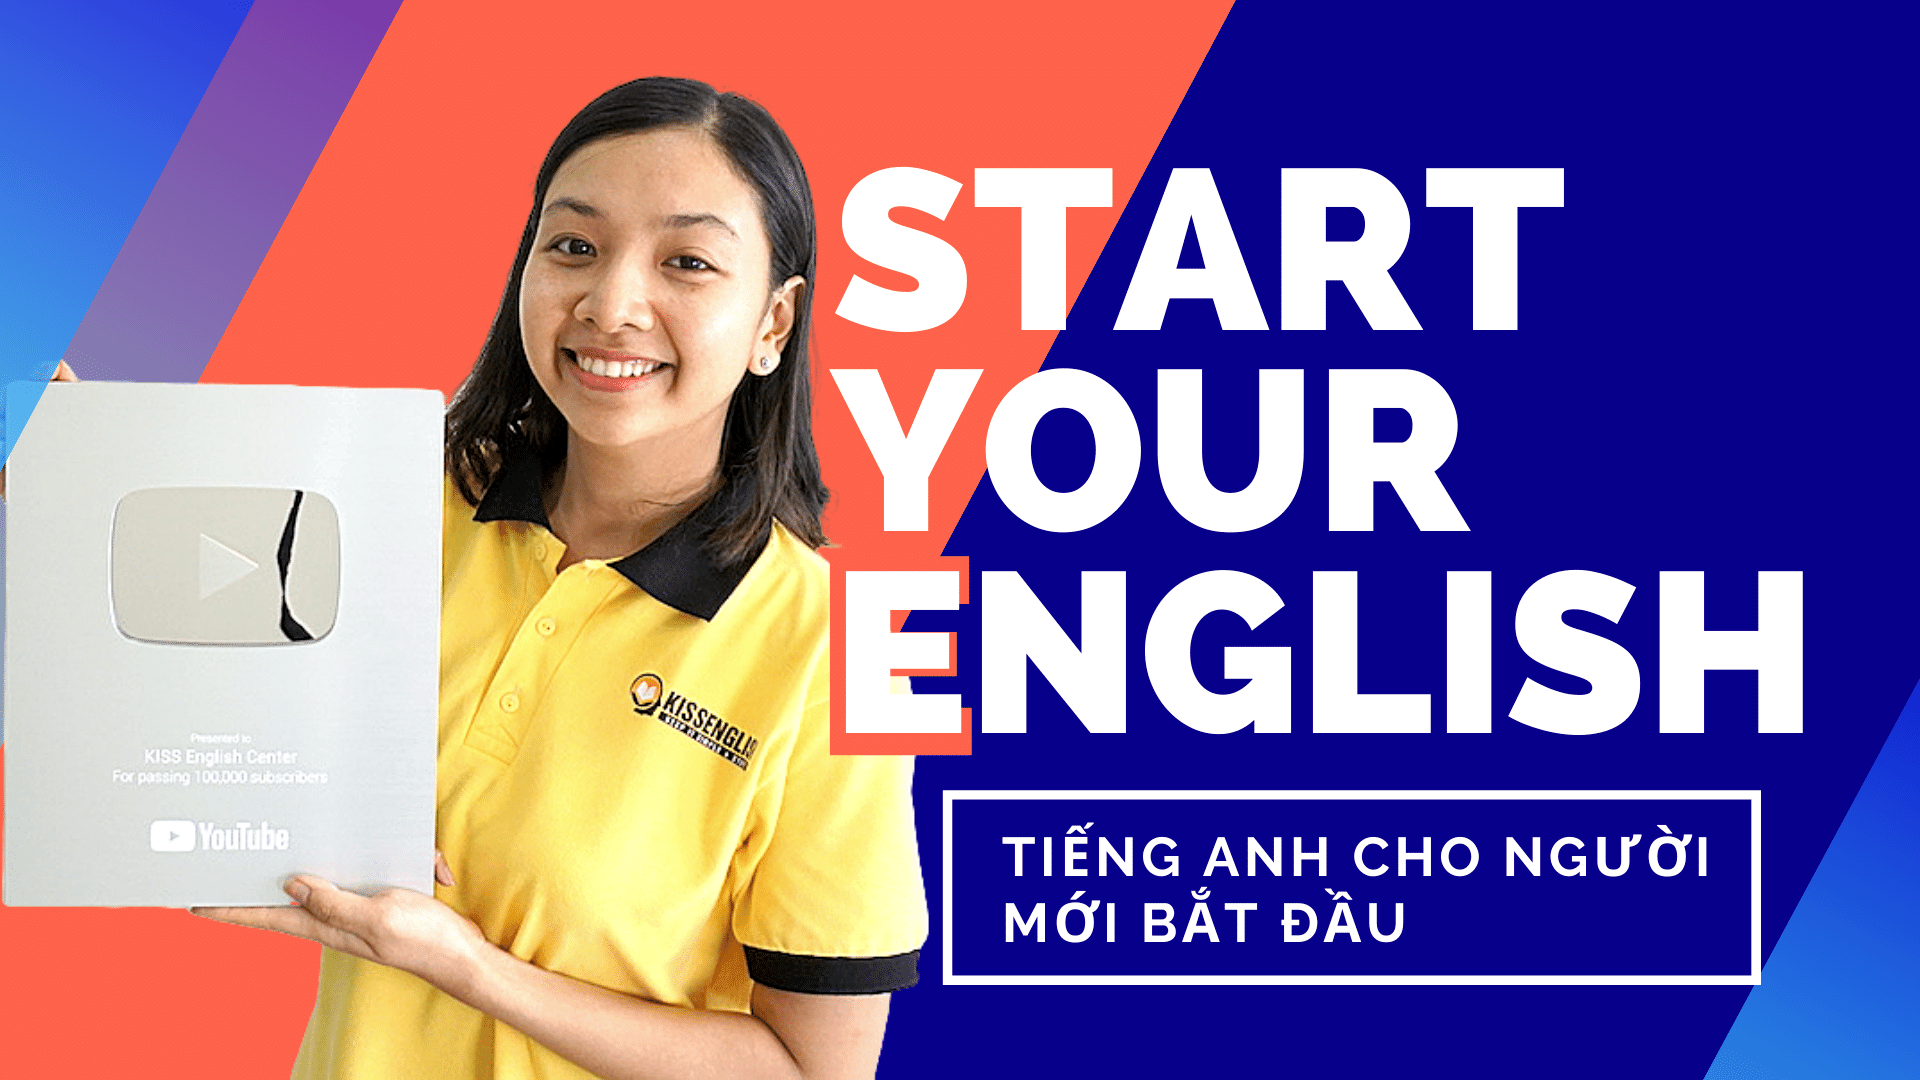 Start Your English là khóa học tiếng Anh được đánh giá cao